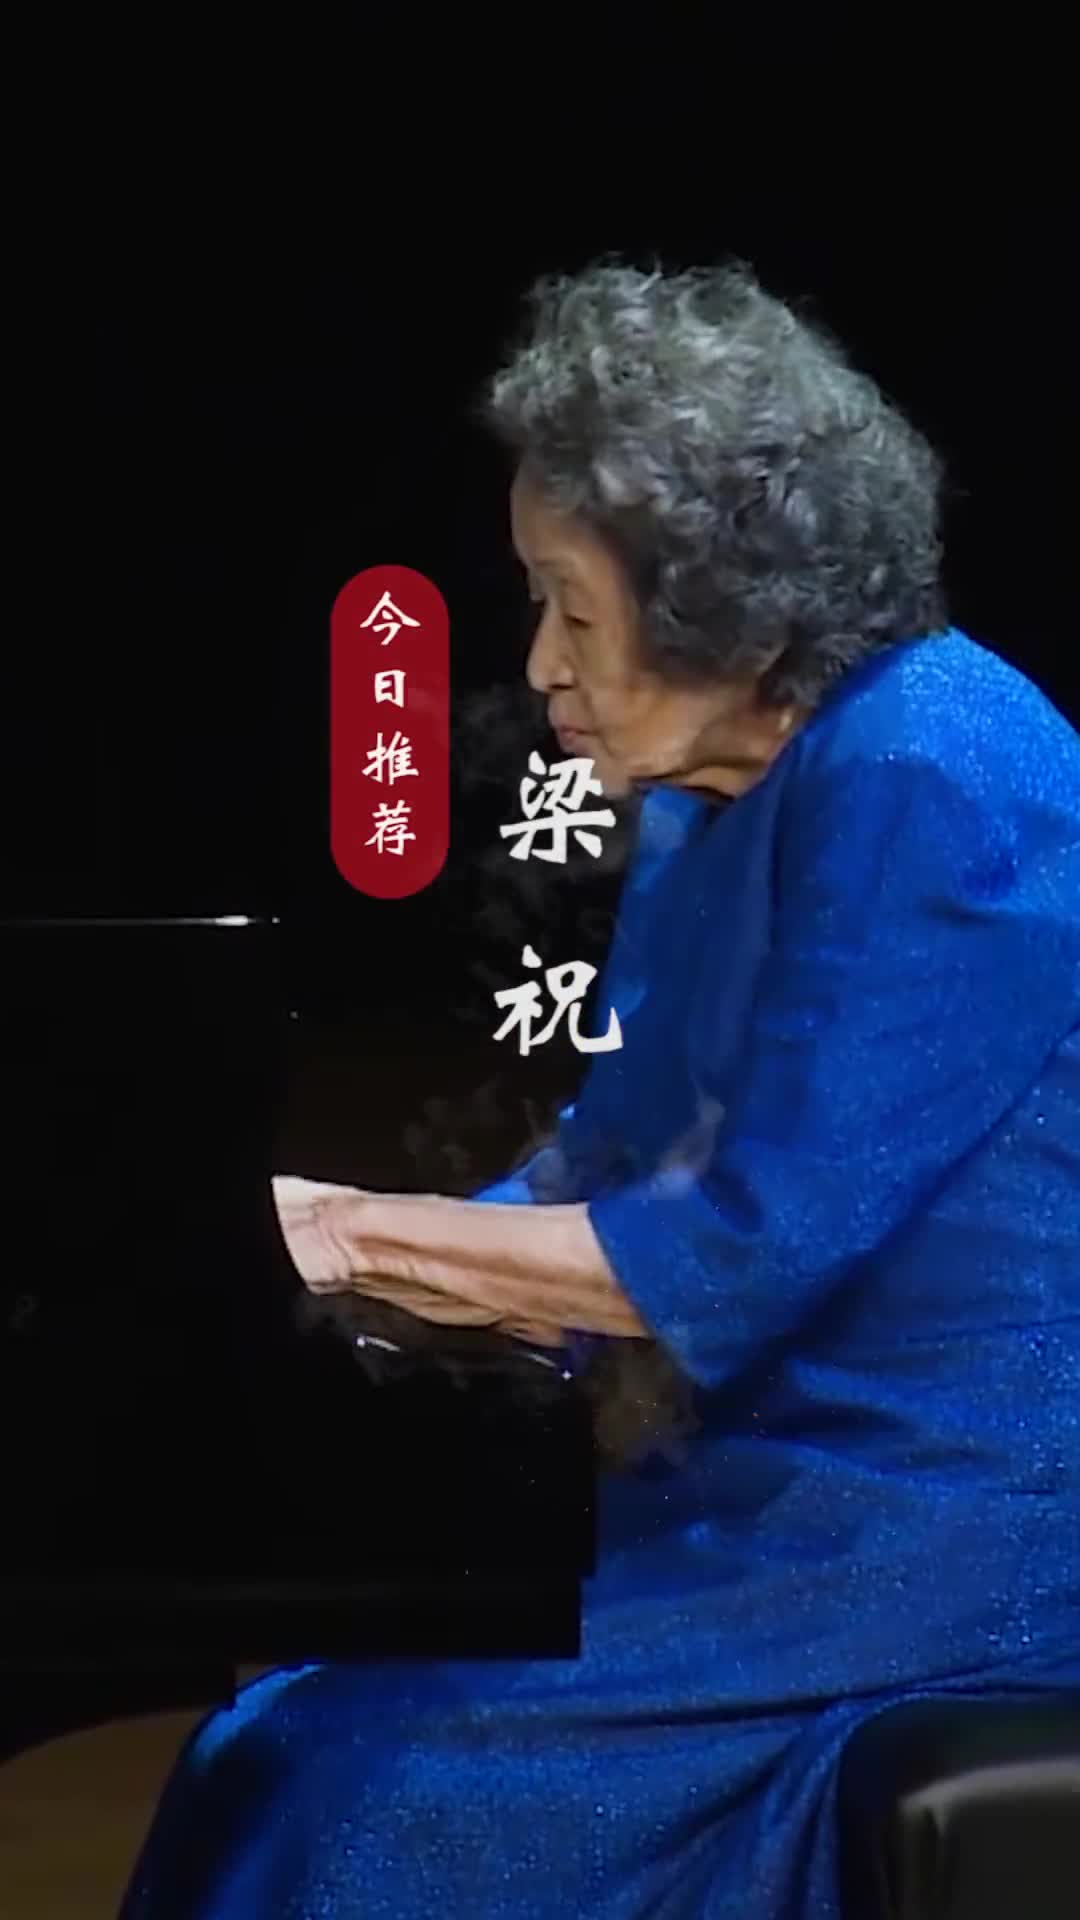 致敬中国第一代钢琴大师巫漪丽先生！千古恩怨今犹在，红尘多少寂寞人！#梁祝